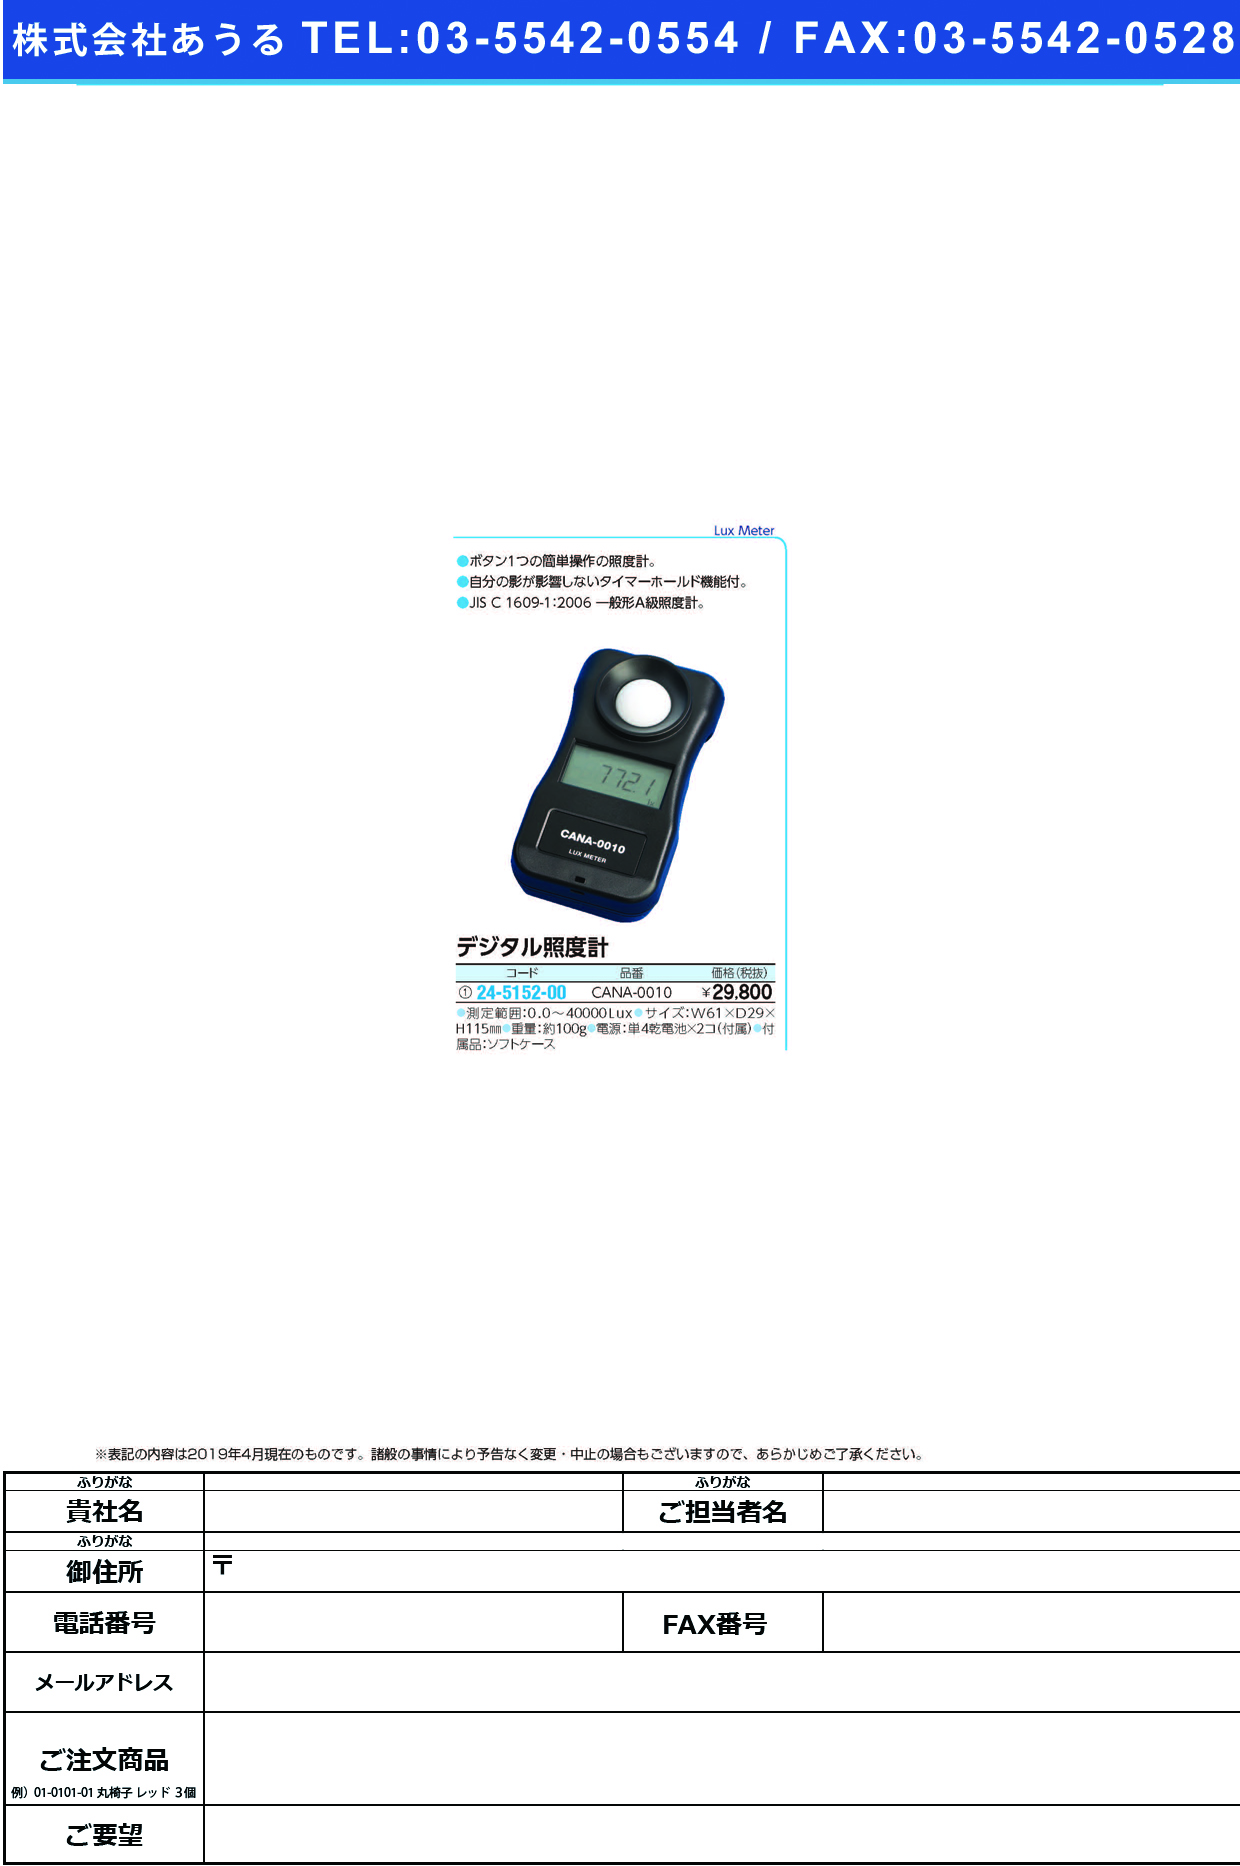 (24-5152-00)デジタル照度計 CANA-0010 ﾃﾞｼﾞﾀﾙｼｮｳﾄﾞｹｲ【1台単位】【2019年カタログ商品】